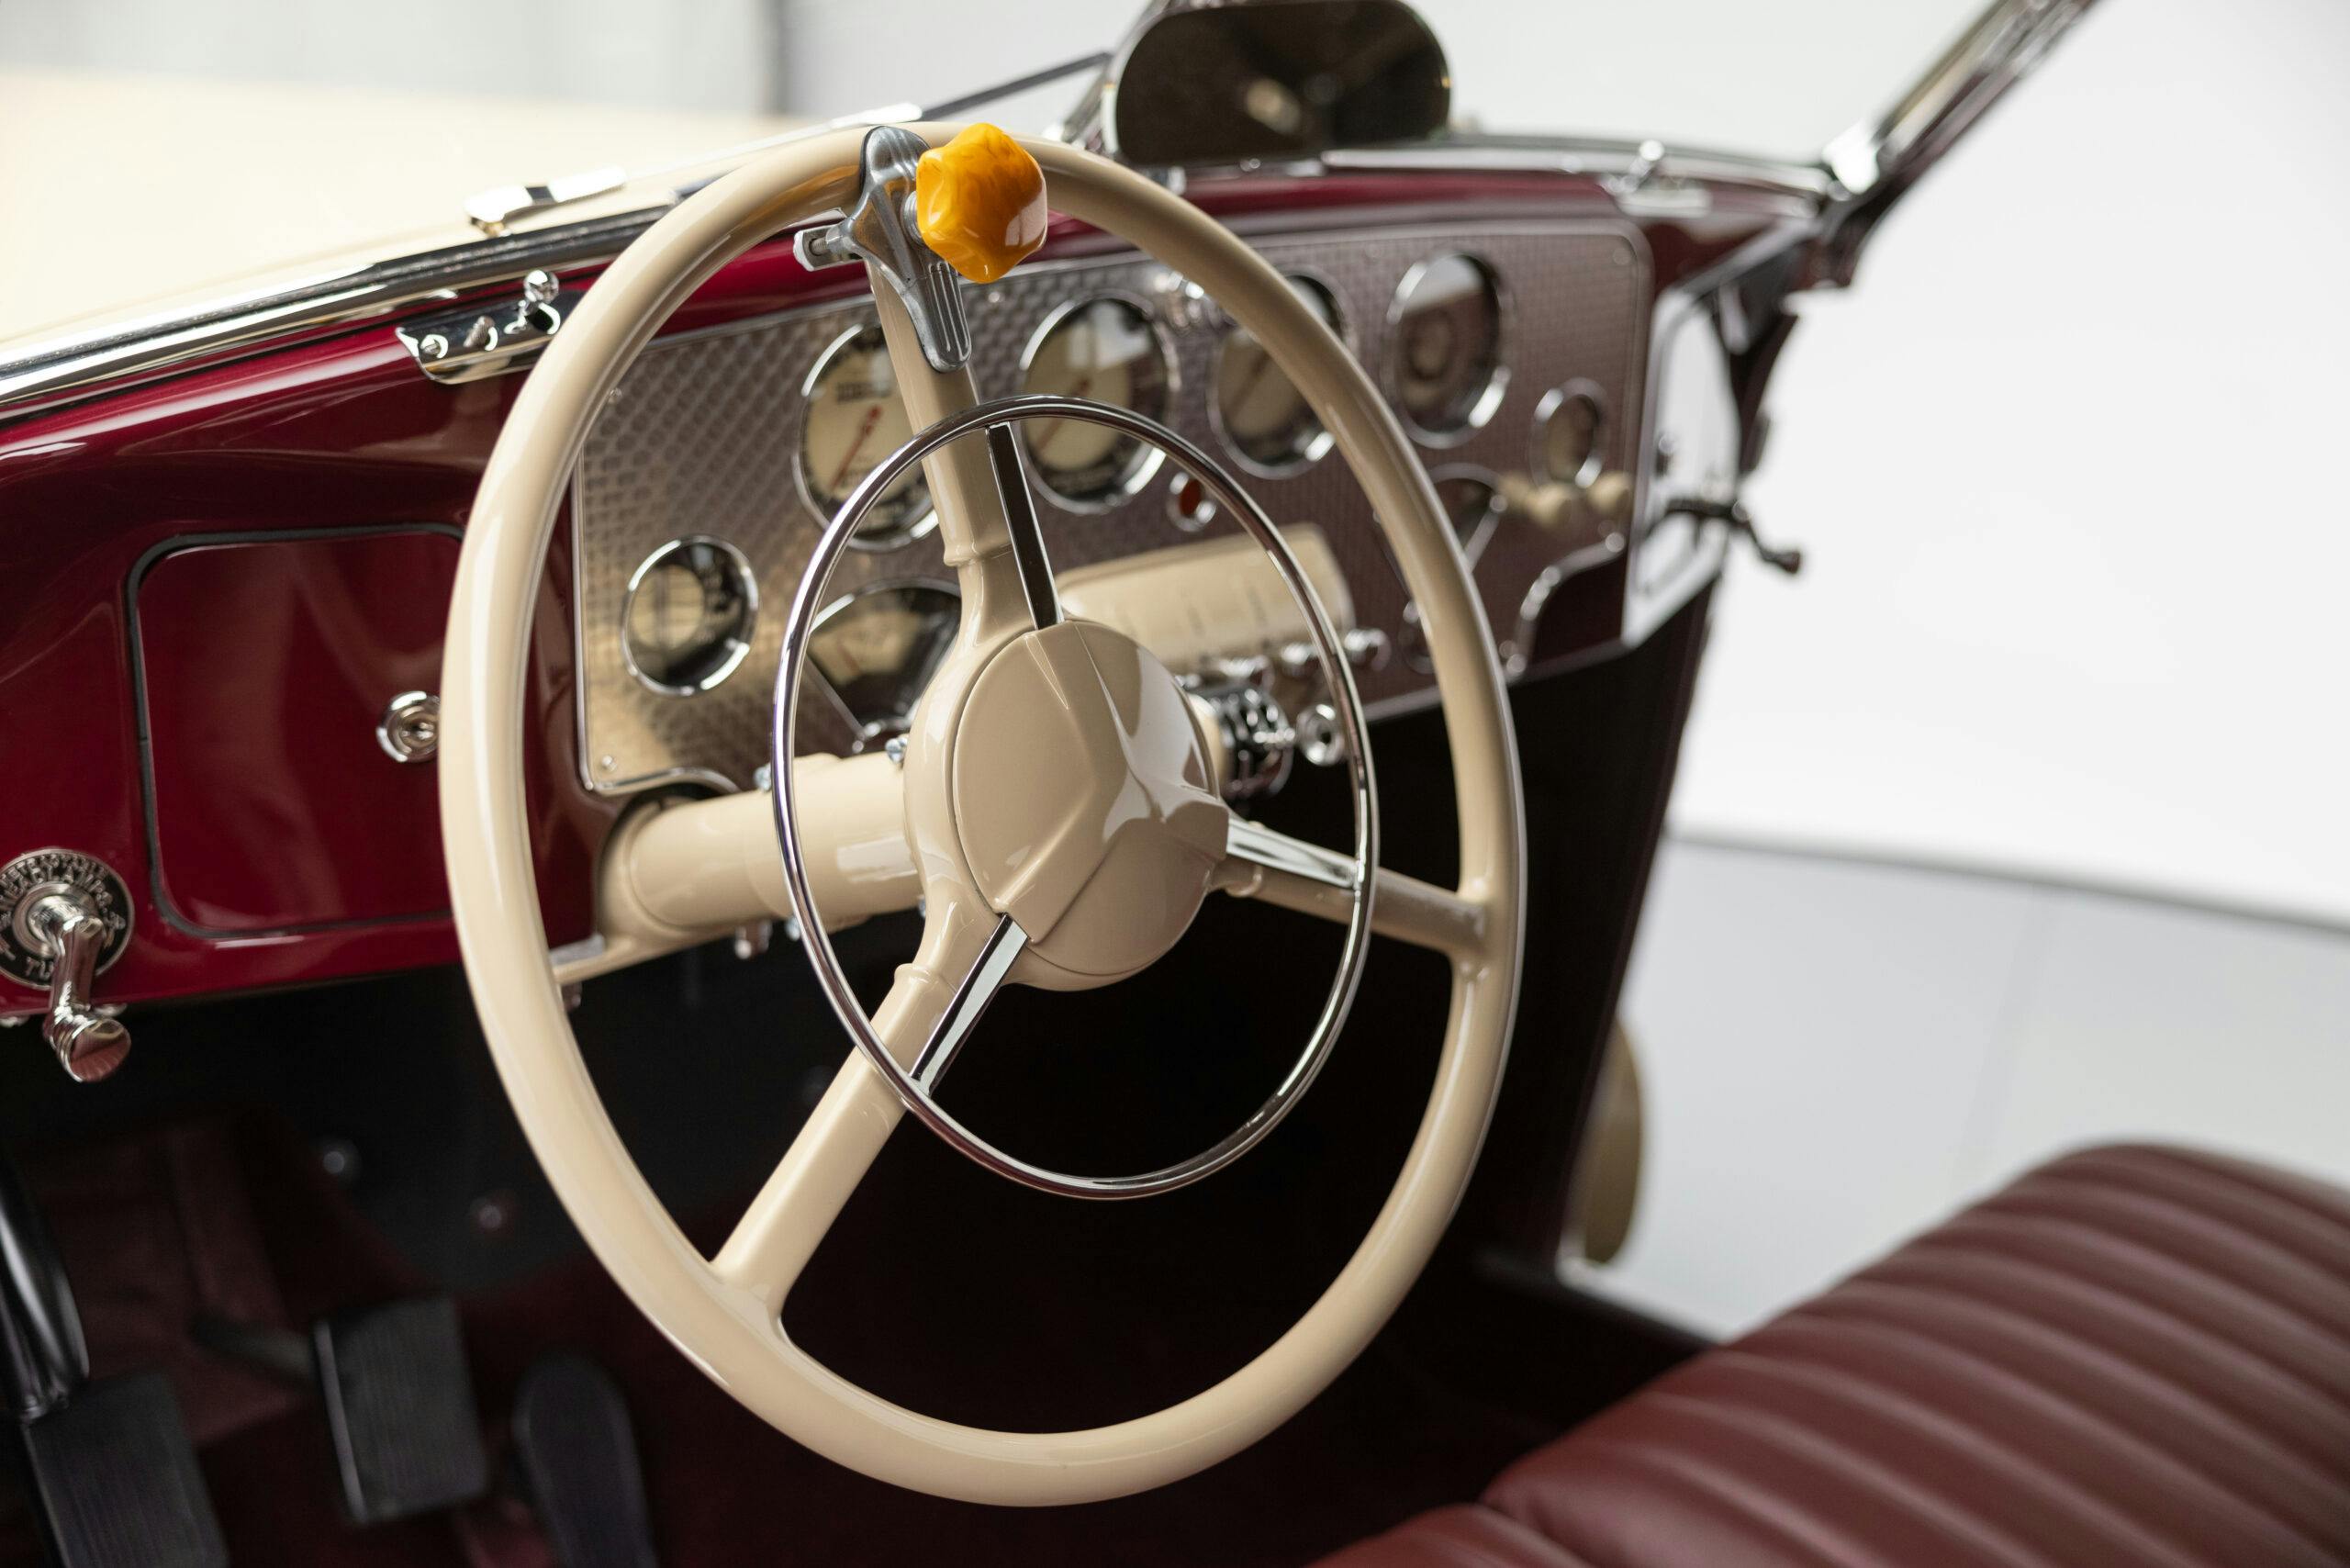 Amelia Earhardt 1937 Cord 812 Phaeton interior steering wheel